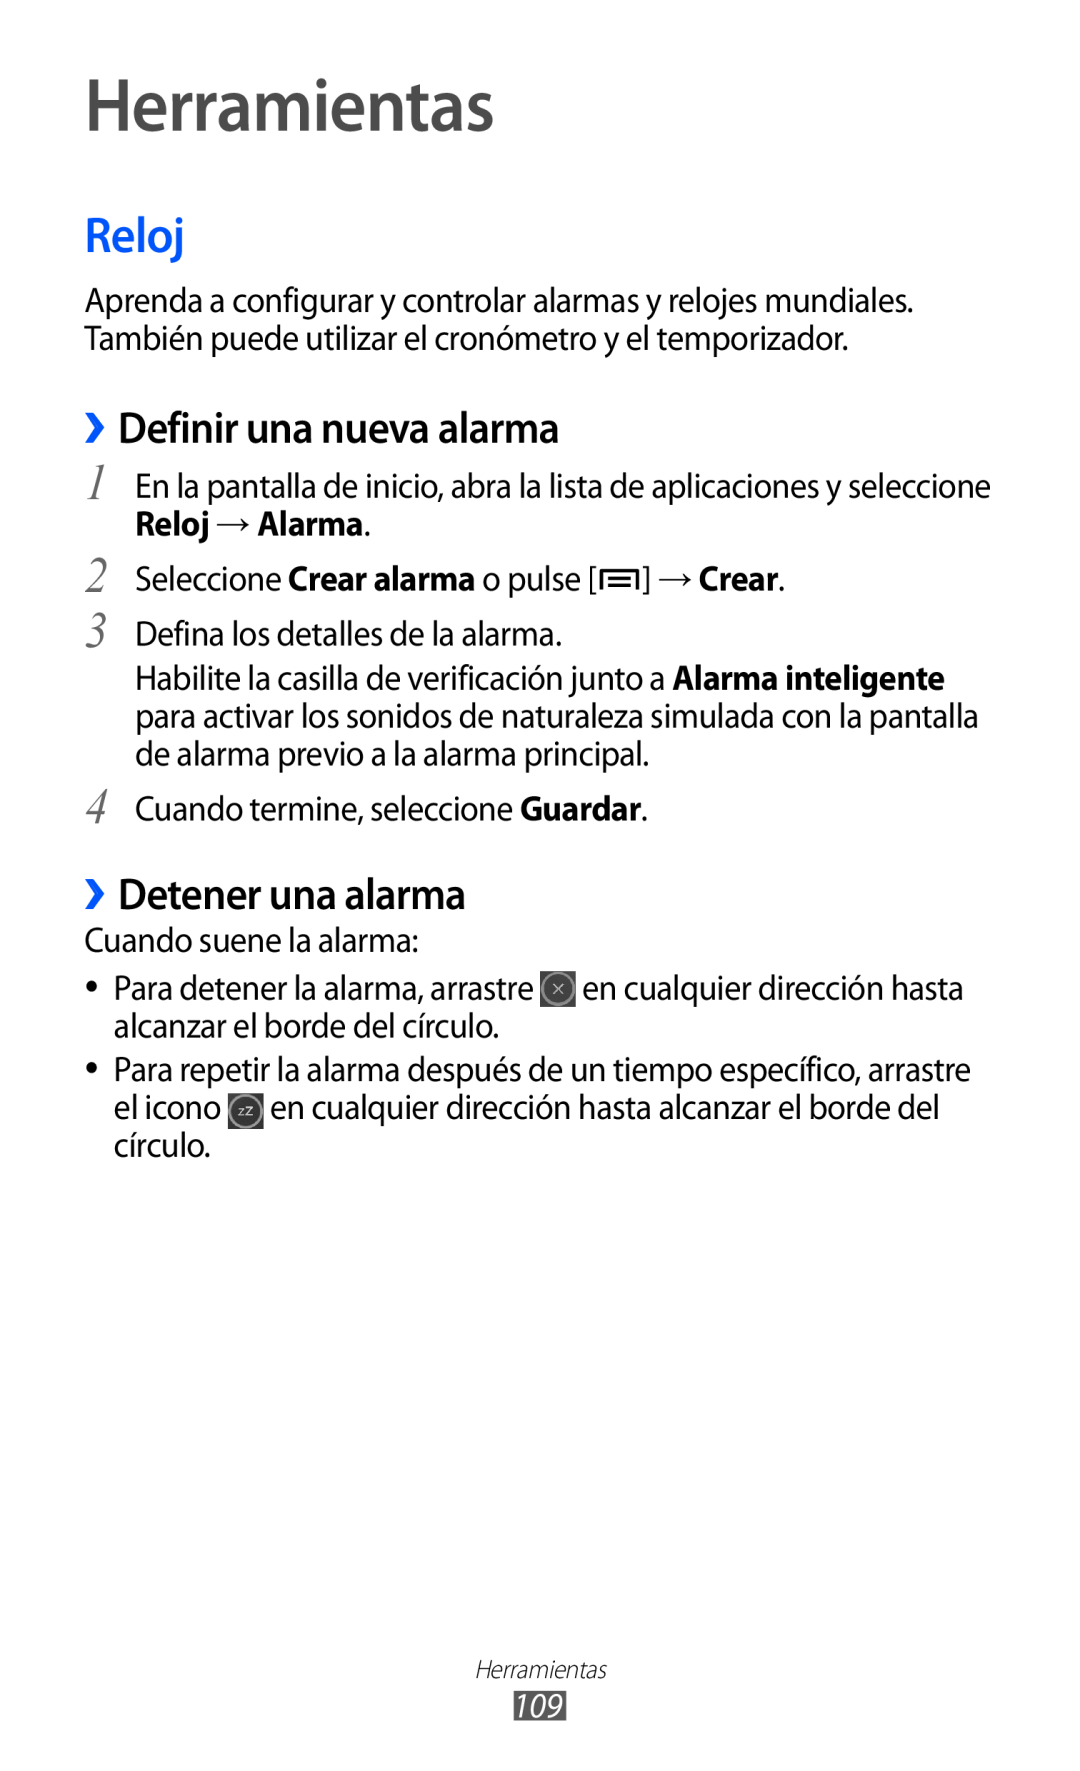 Samsung GT-S6500XKAATL, GT-S6500RWDTMN manual Herramientas, Reloj, ››Definir una nueva alarma, ››Detener una alarma 